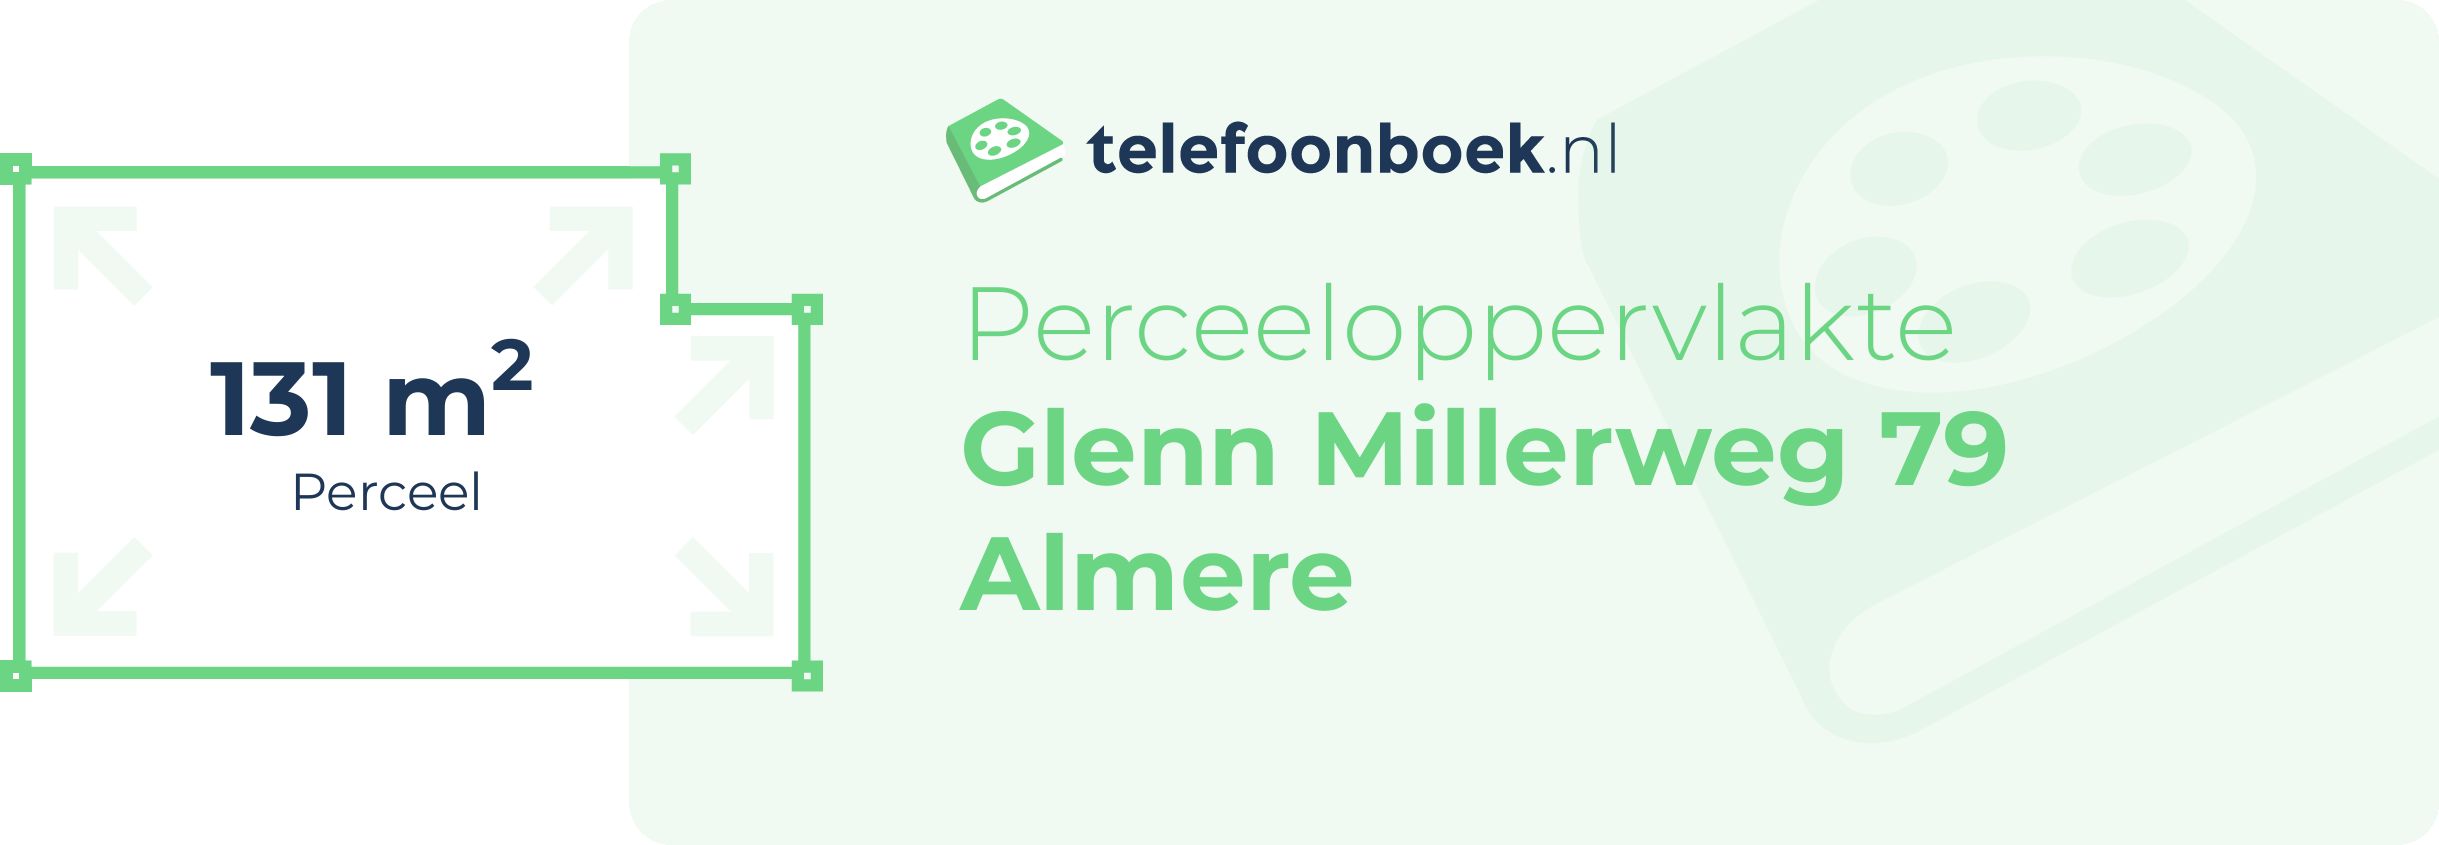 Perceeloppervlakte Glenn Millerweg 79 Almere